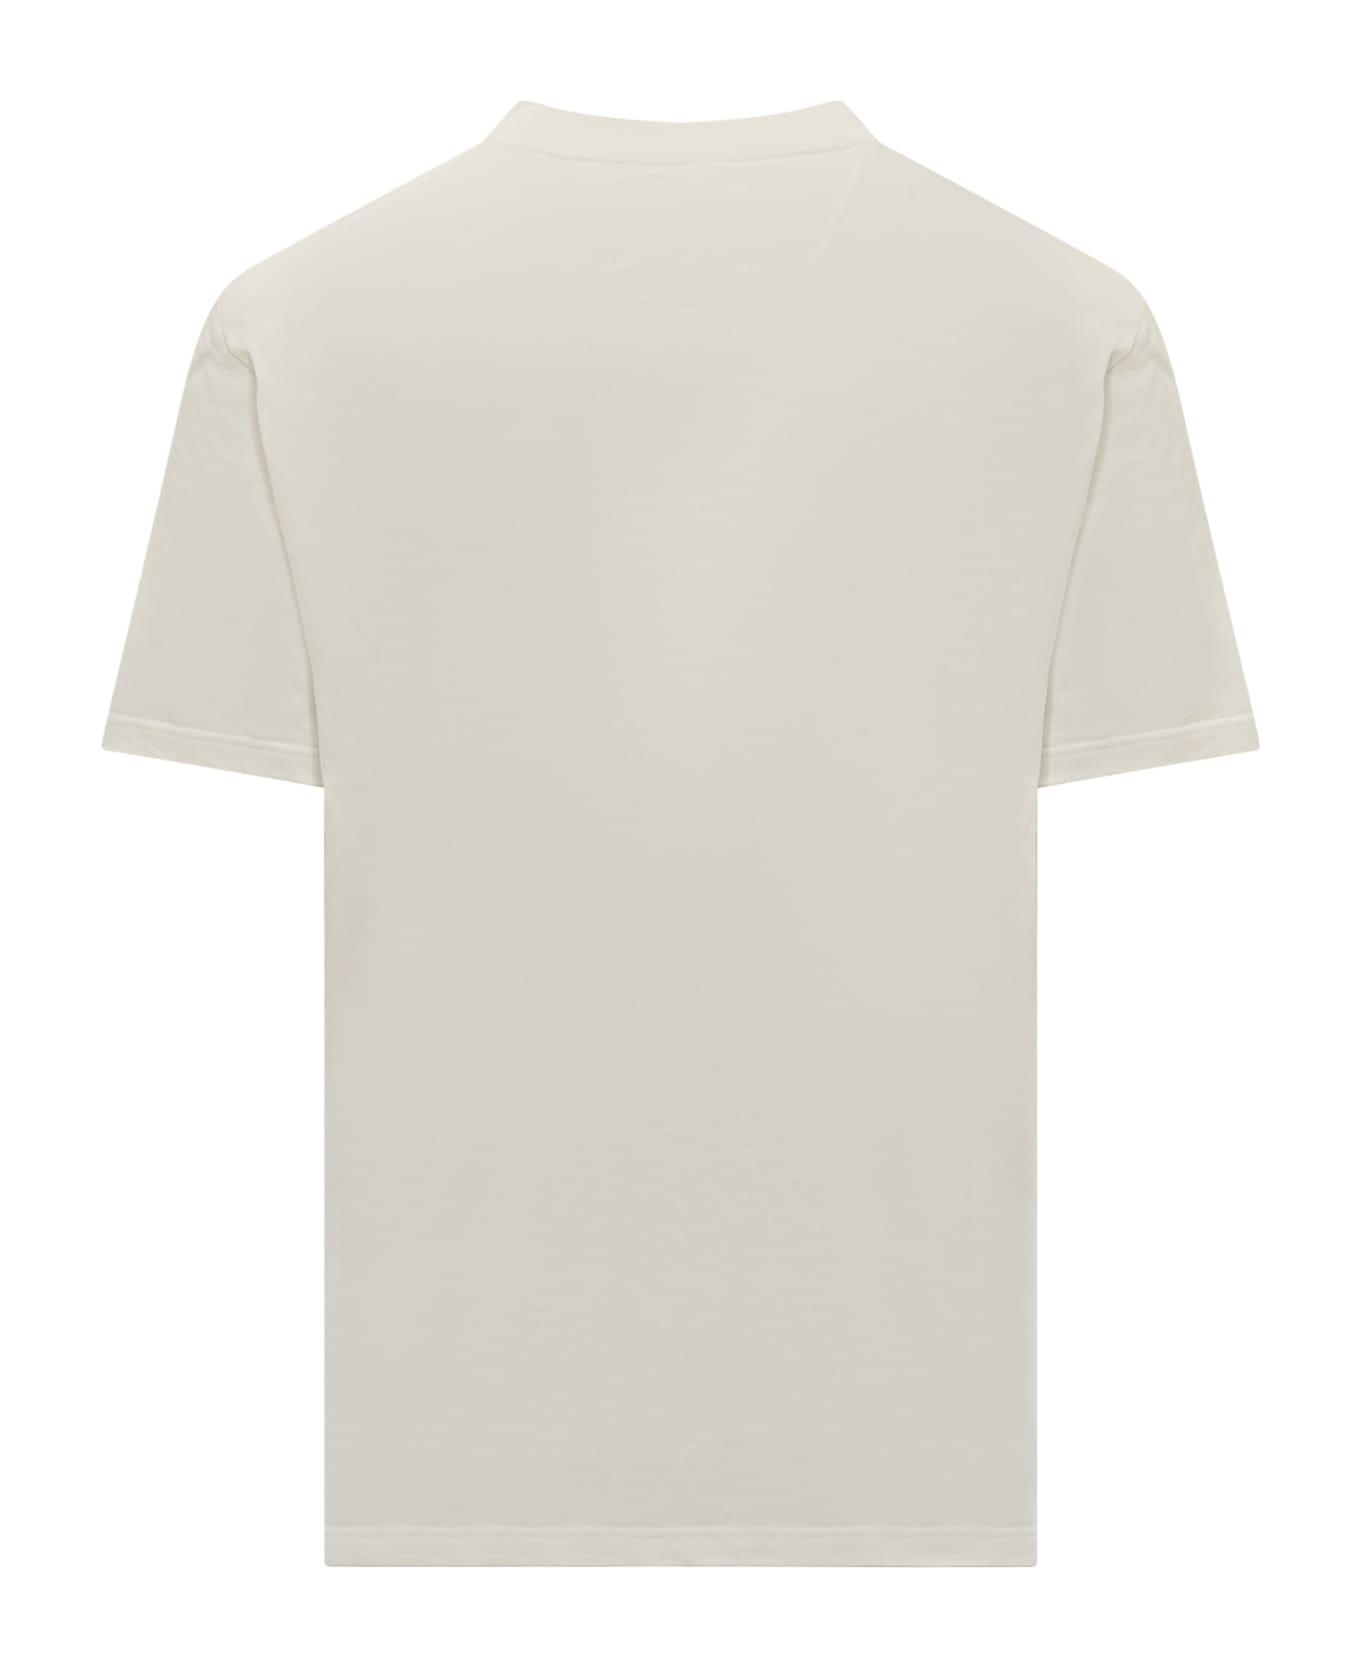 Jil Sander T-shirt - BIANCO